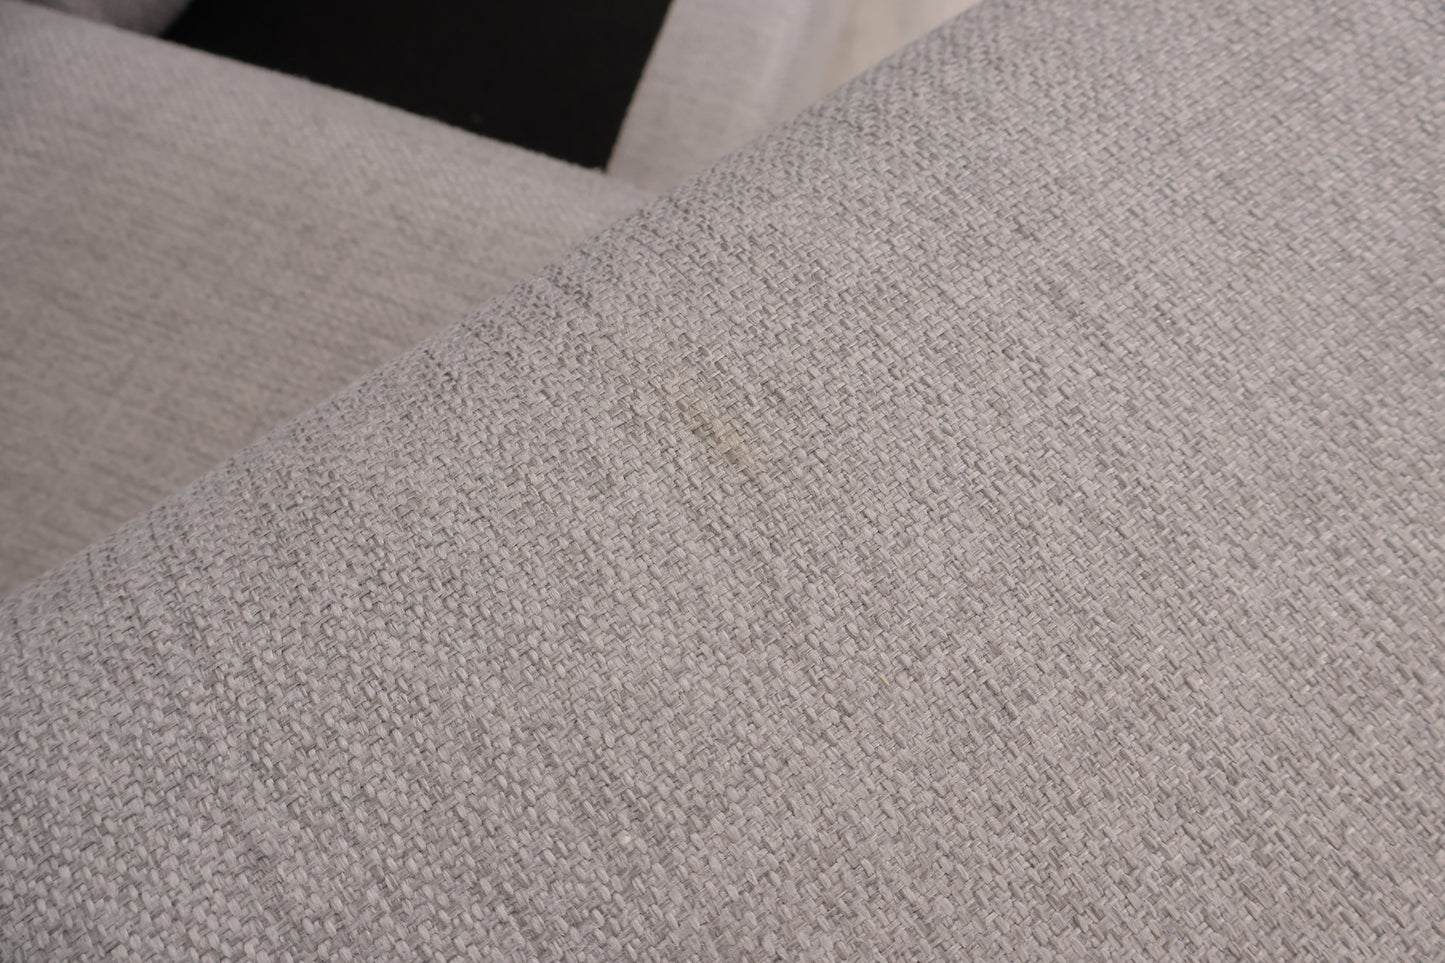 Nyrenset | Romslig lys grå Solution u-sofa med sjeselong